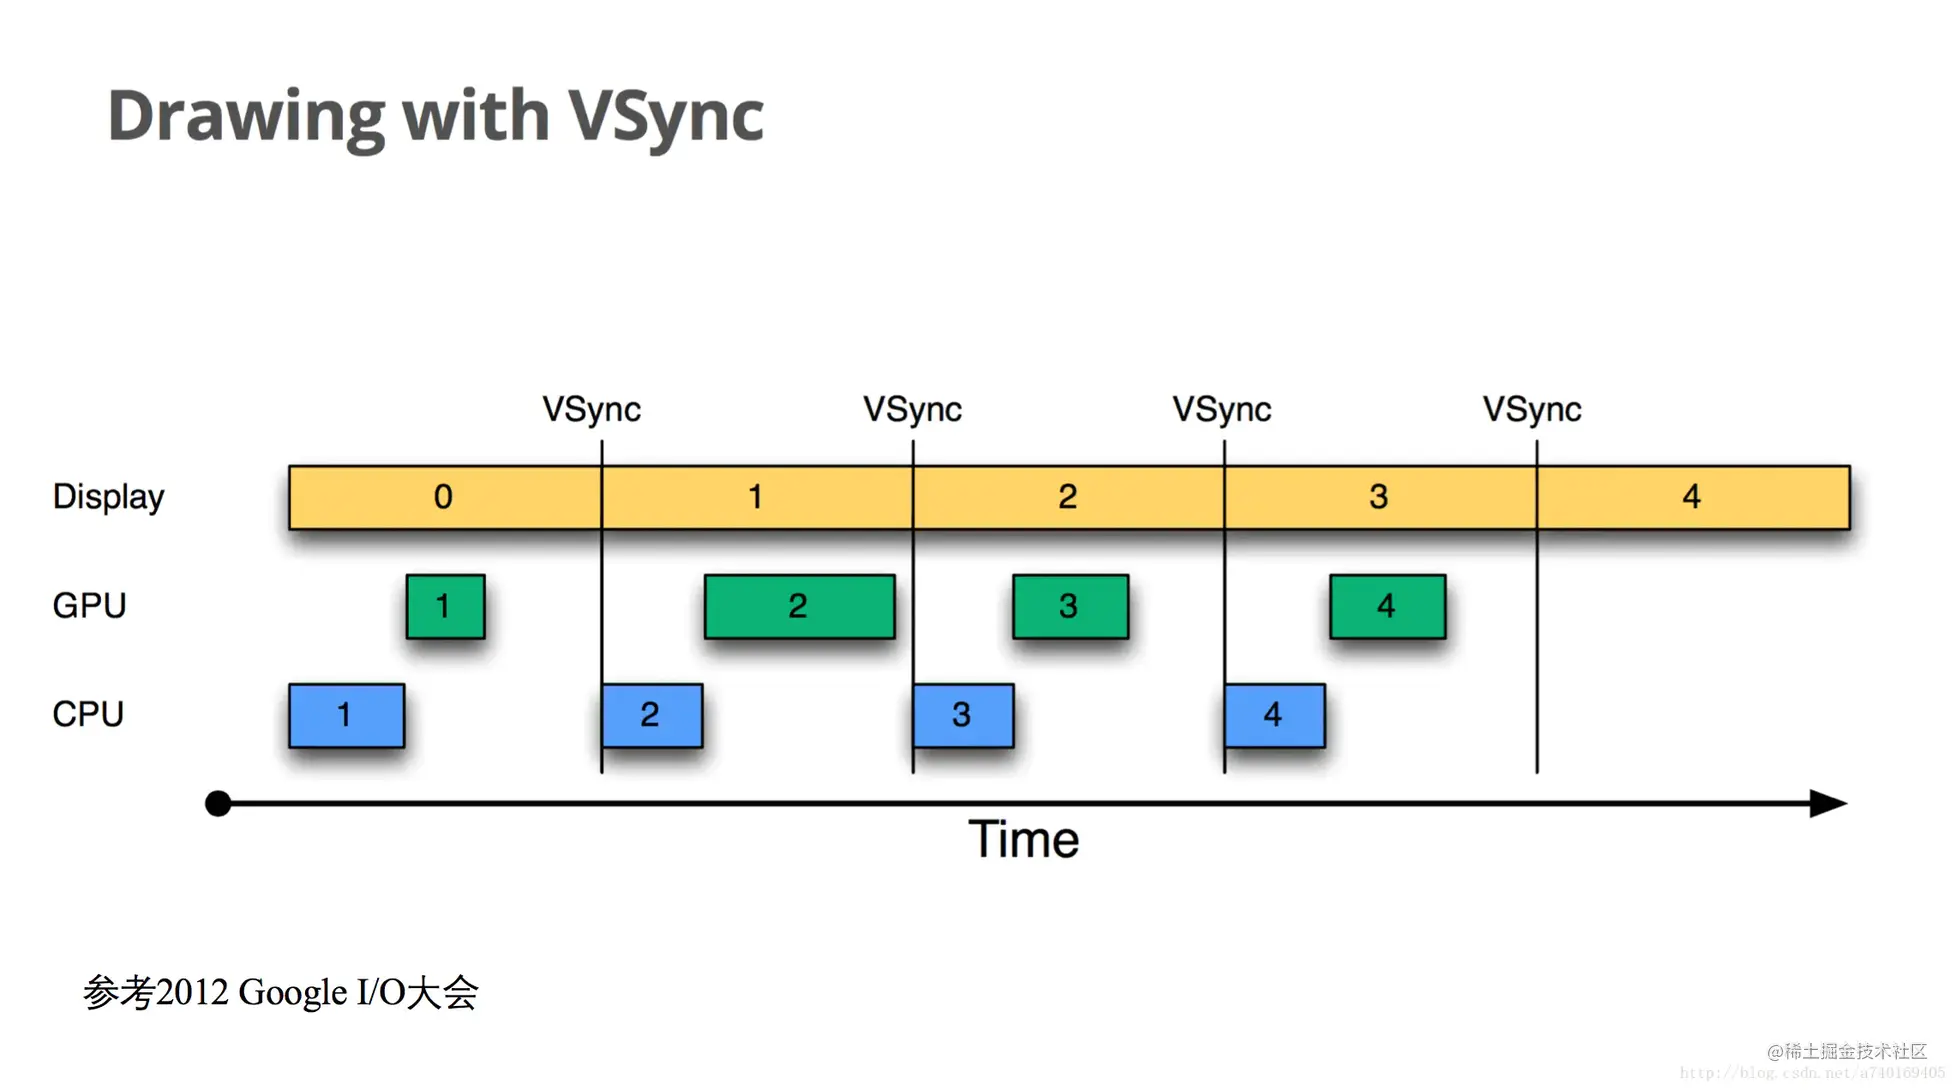 VSync脉冲到来：双缓存交换，且开始CPU/GPU绘制